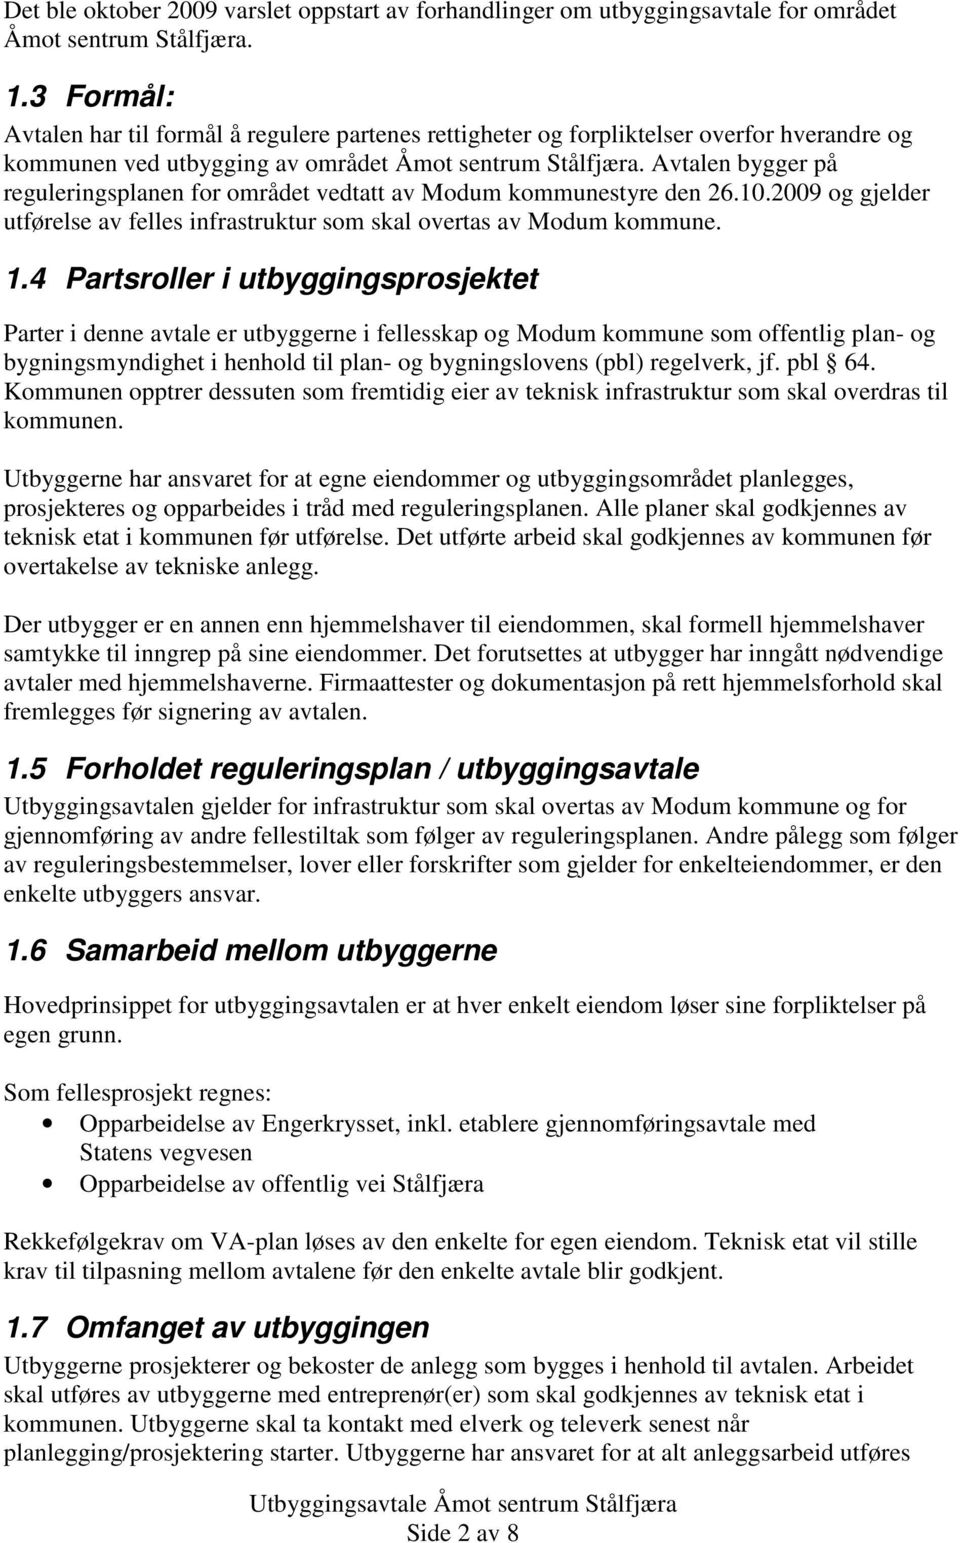 Avtalen bygger på reguleringsplanen for området vedtatt av Modum kommunestyre den 26.10.2009 og gjelder utførelse av felles infrastruktur som skal overtas av Modum kommune. 1.